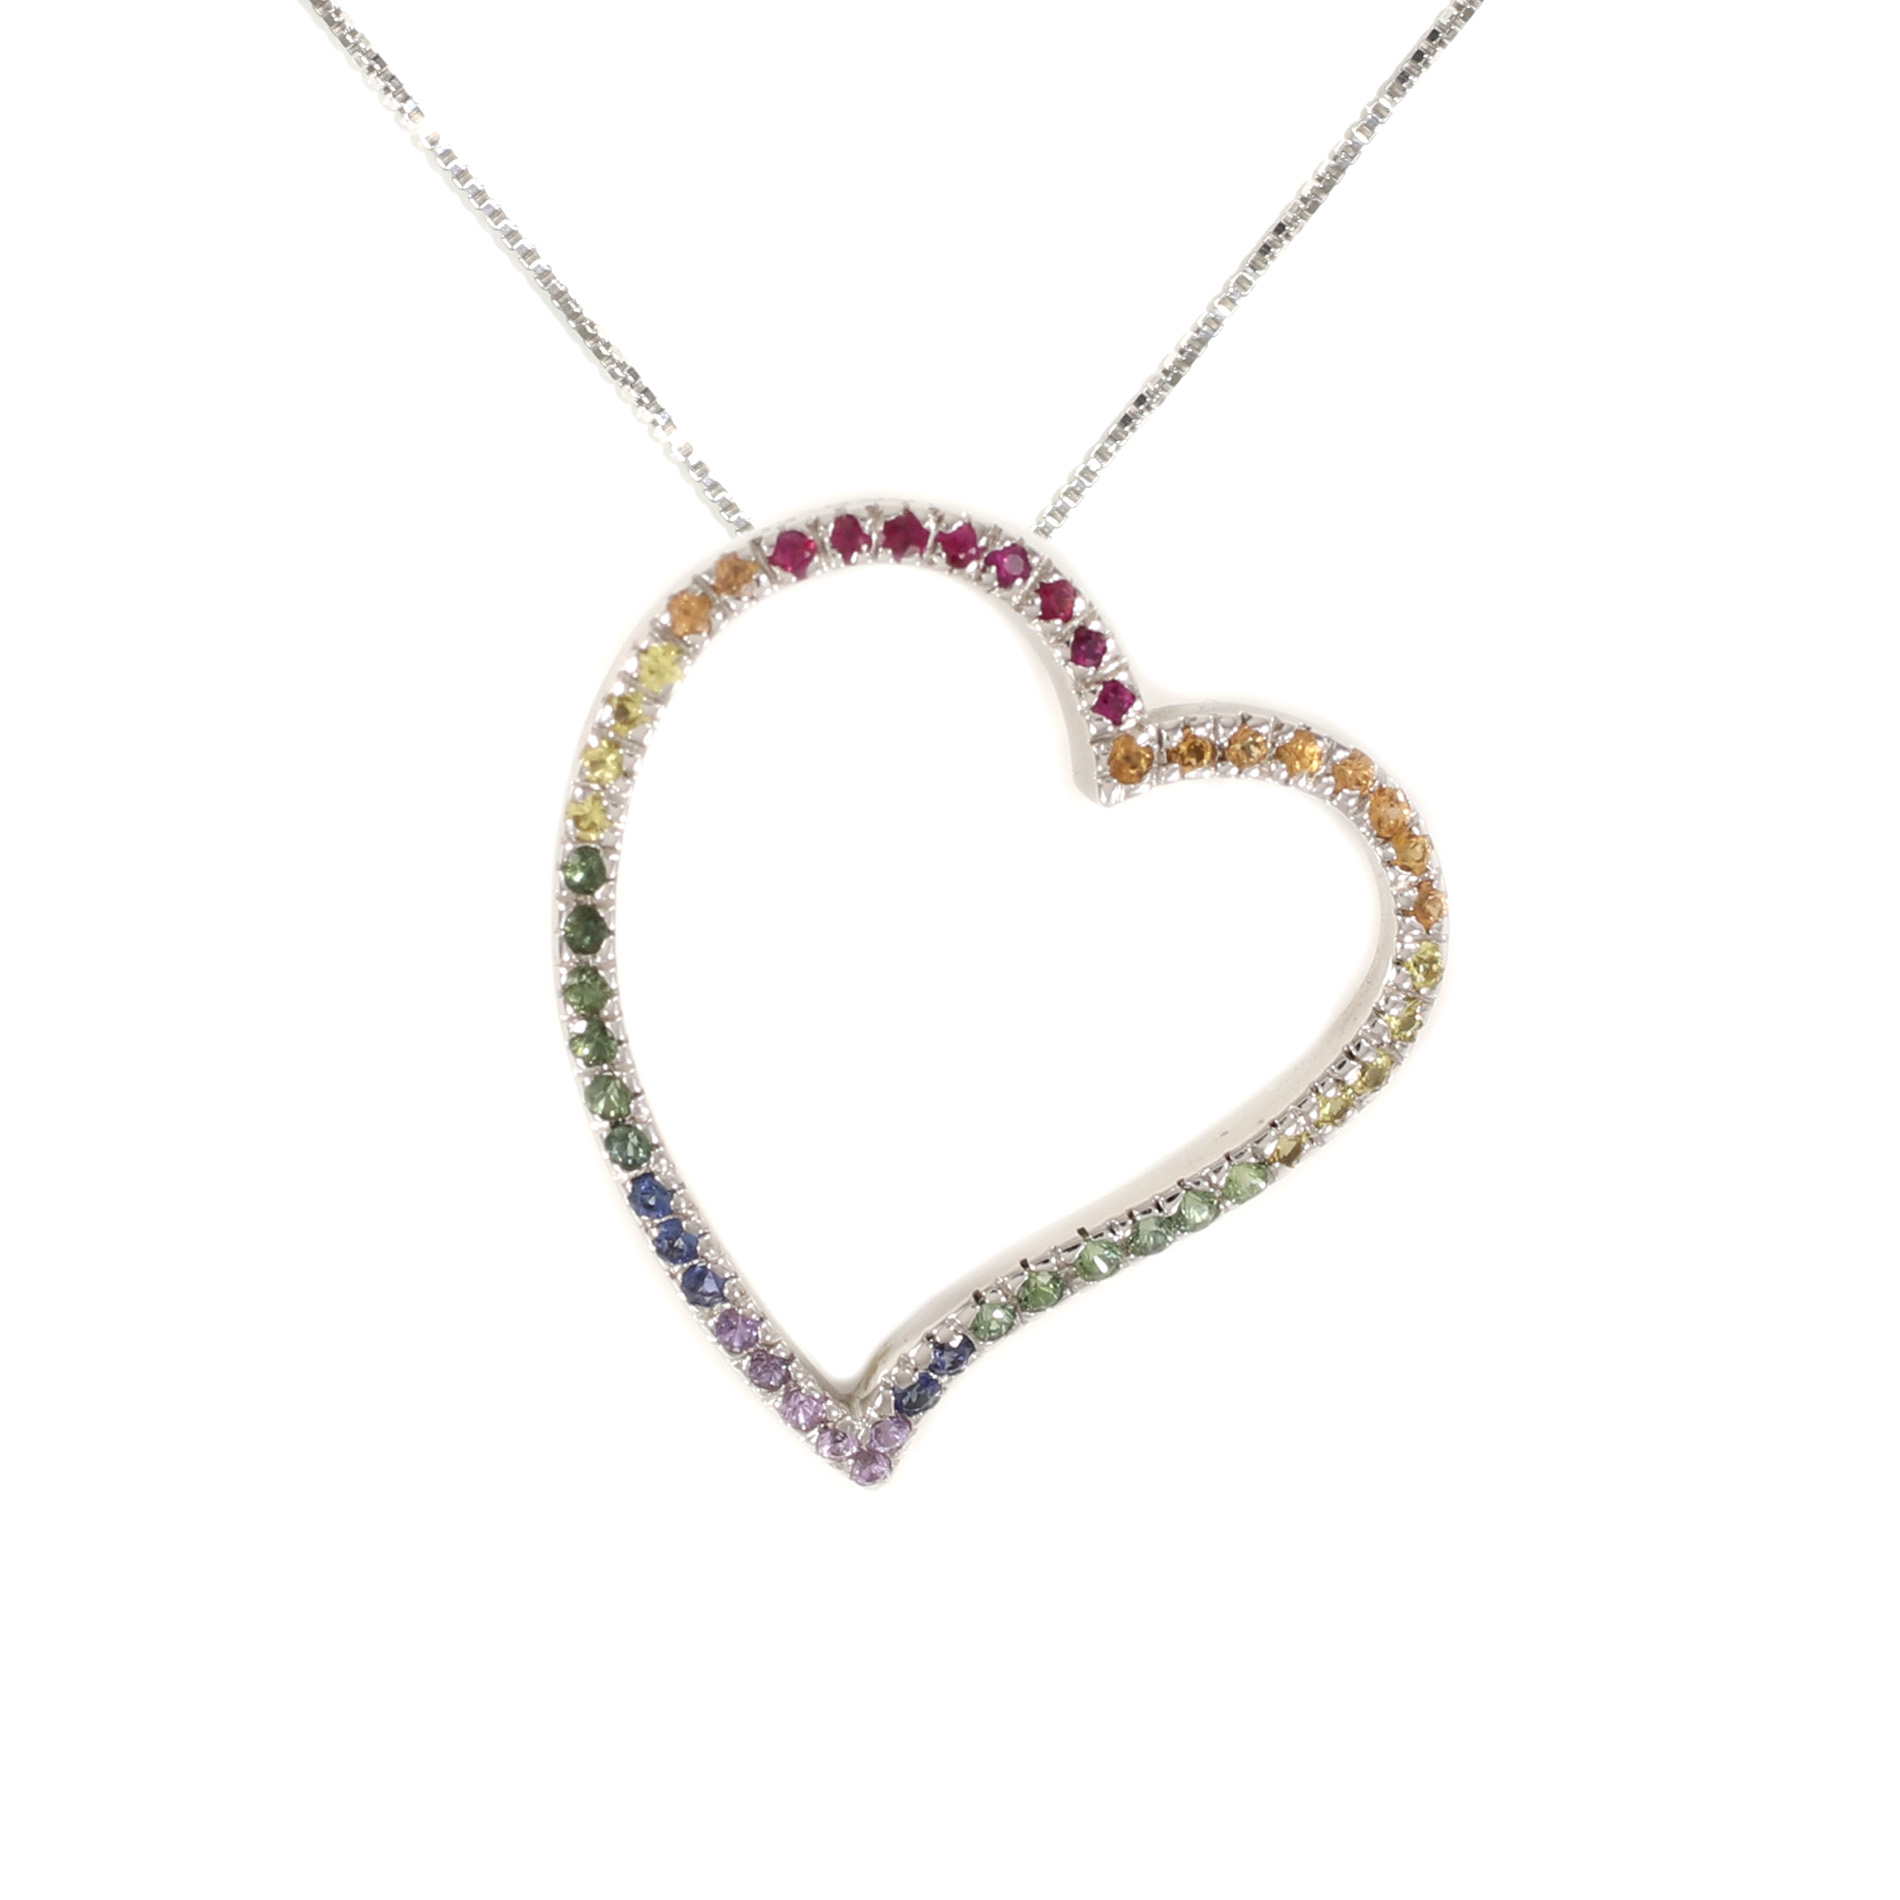 Rainbow Heart Pendant